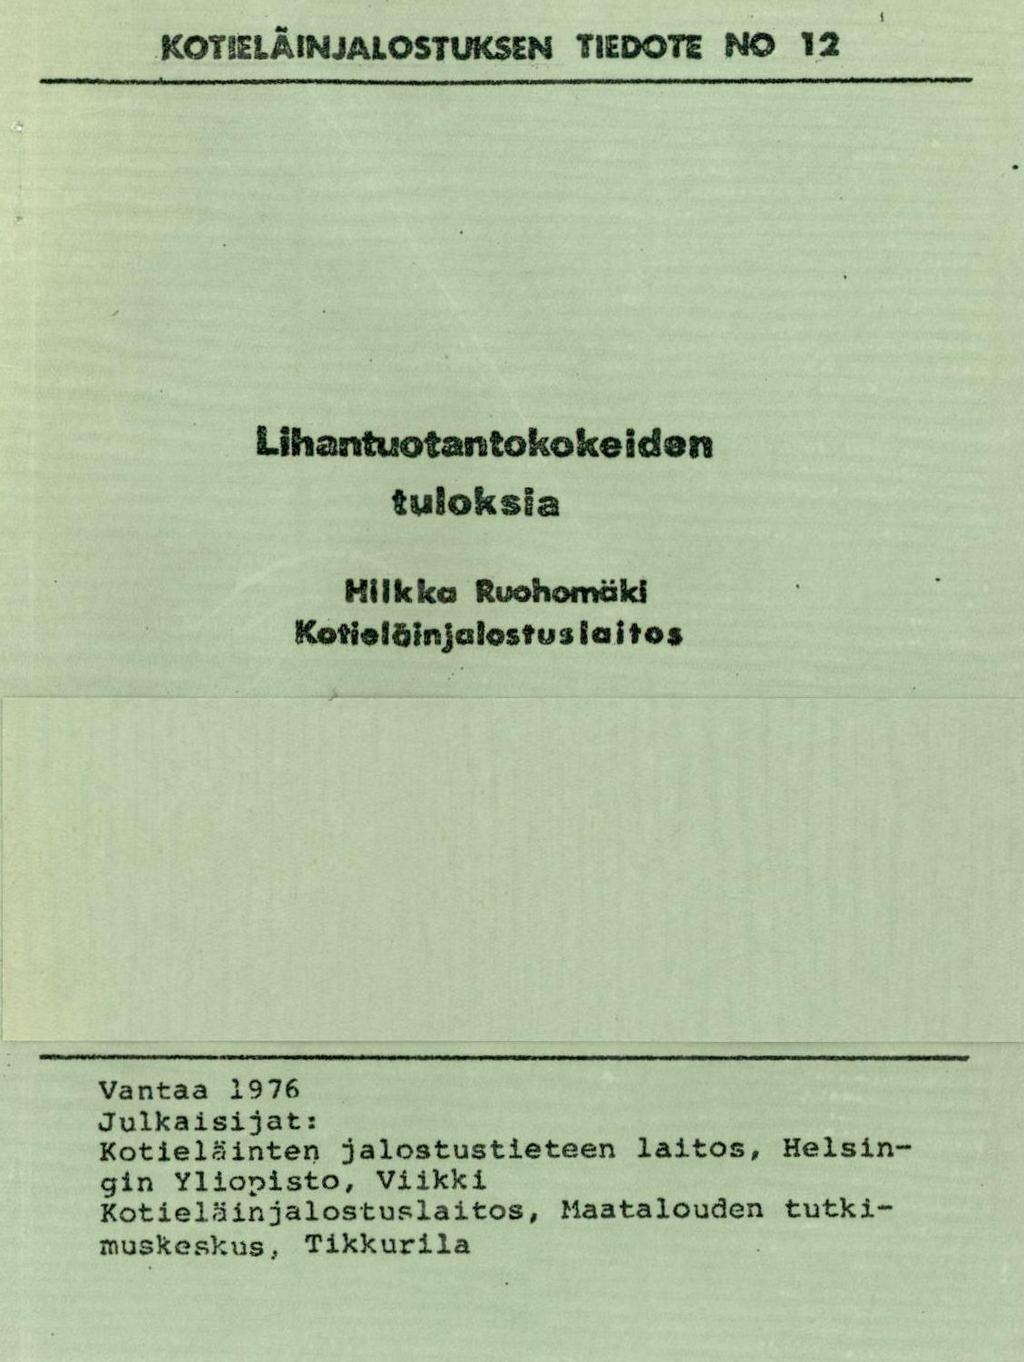 KOTLÄINUALOSTUKSEN TIEDOTE I'40 12 Lihantuotantokokeiclan tuloksia HI I k ka Ruohomaki Kotielthinjalost 133 la I t os Vantaa 1976